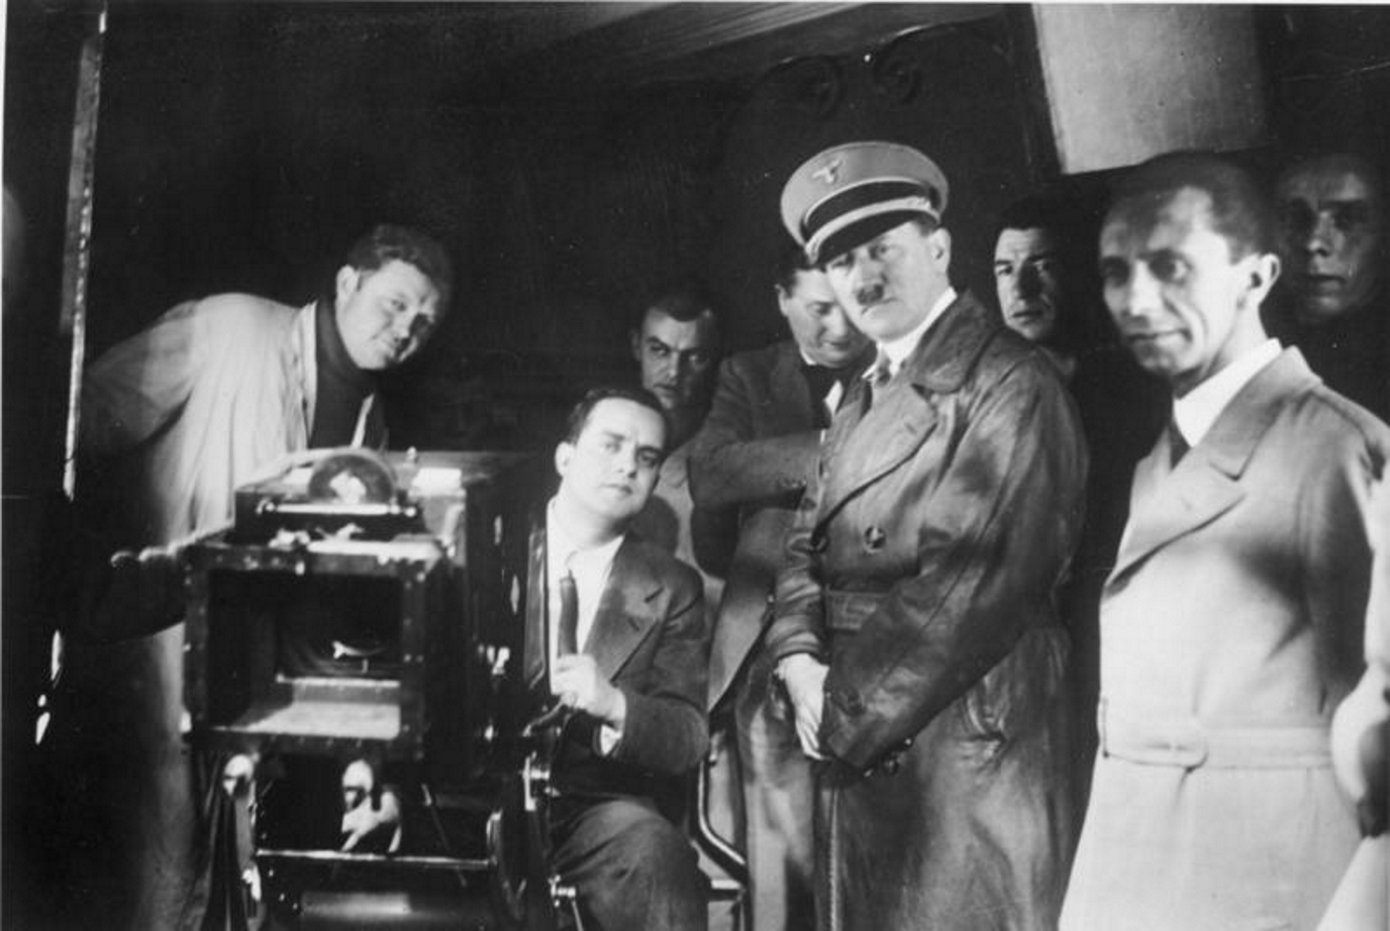 Núria Bou: "El cine español fue el más acartonado de los cines fascistas"